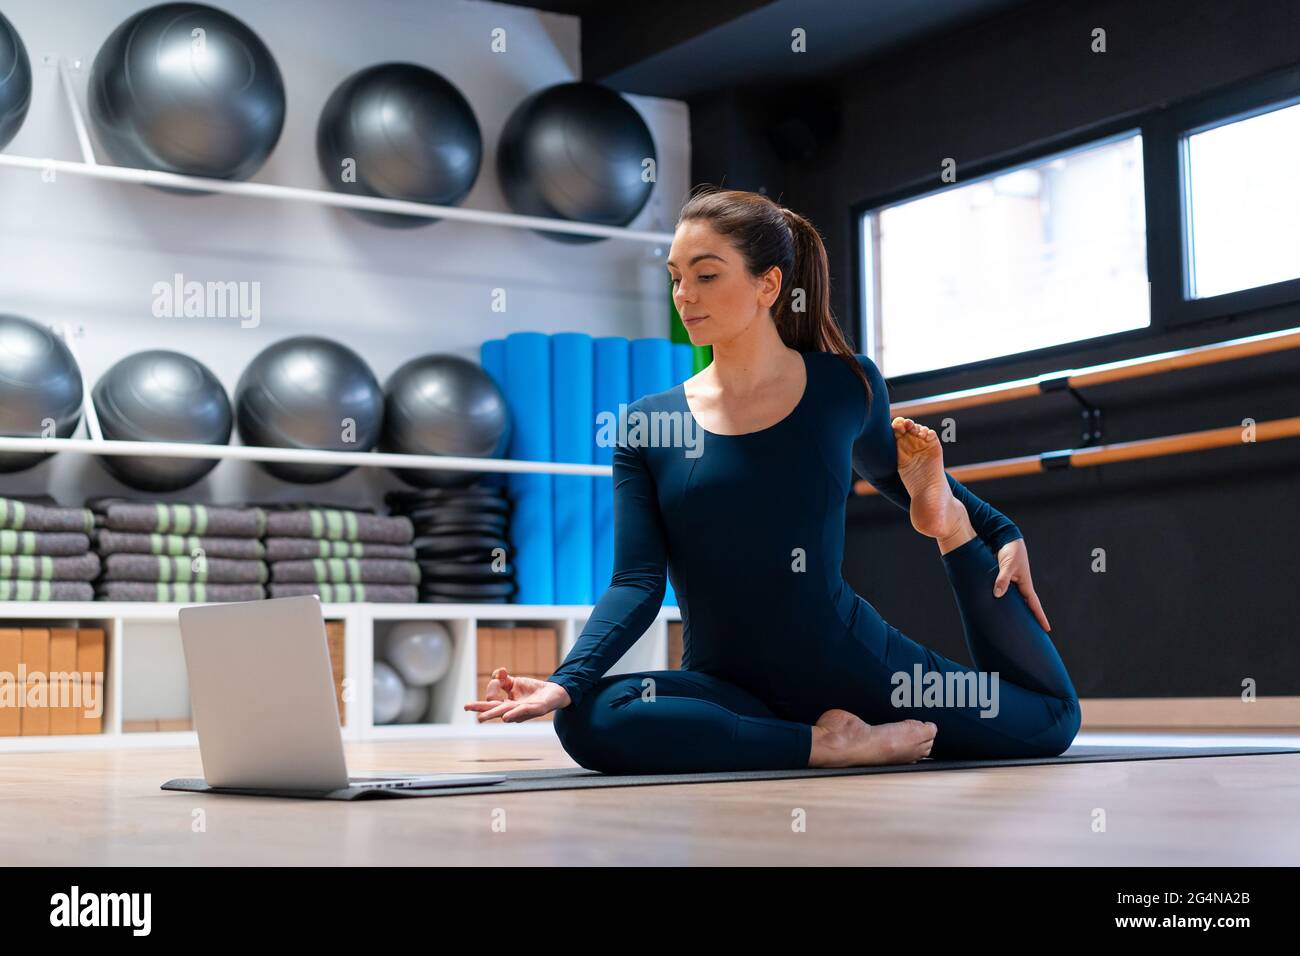 Ganzer Körper der flexiblen jungen weiblichen Yogalehrerin, die eine einbeinige King Pigeon Variation mit Mudra-Geste vor dem Laptop-Bildschirm während onl Stockfoto